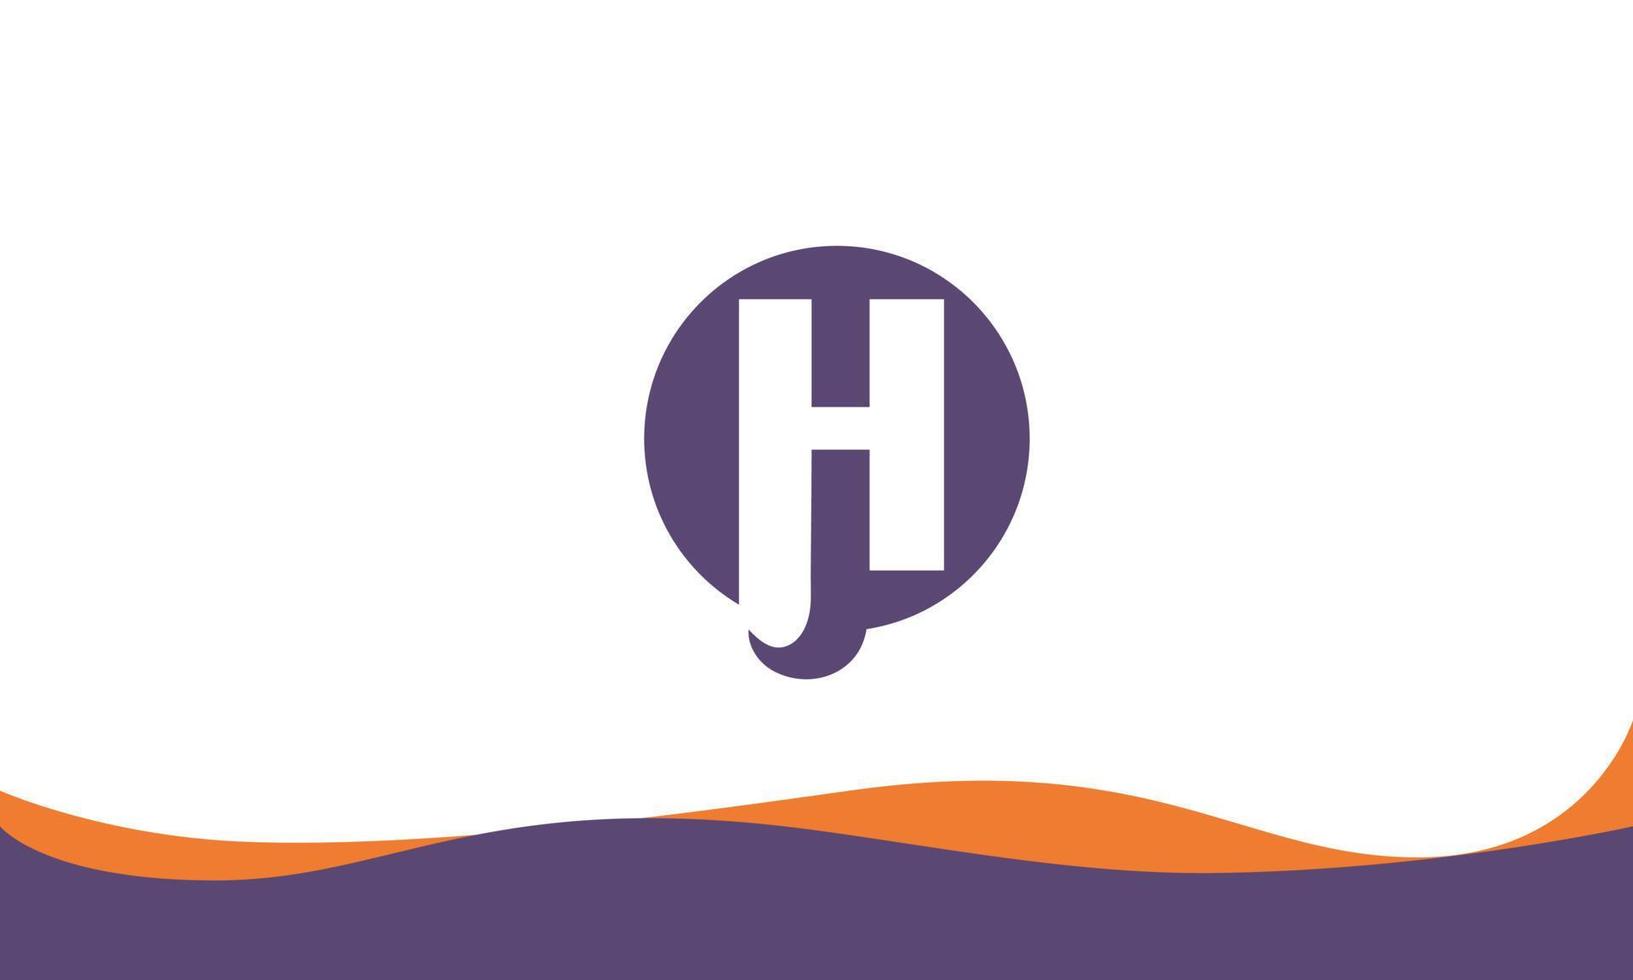 Alphabet letters Initials Monogram logo HQ, QH, H and Q vector